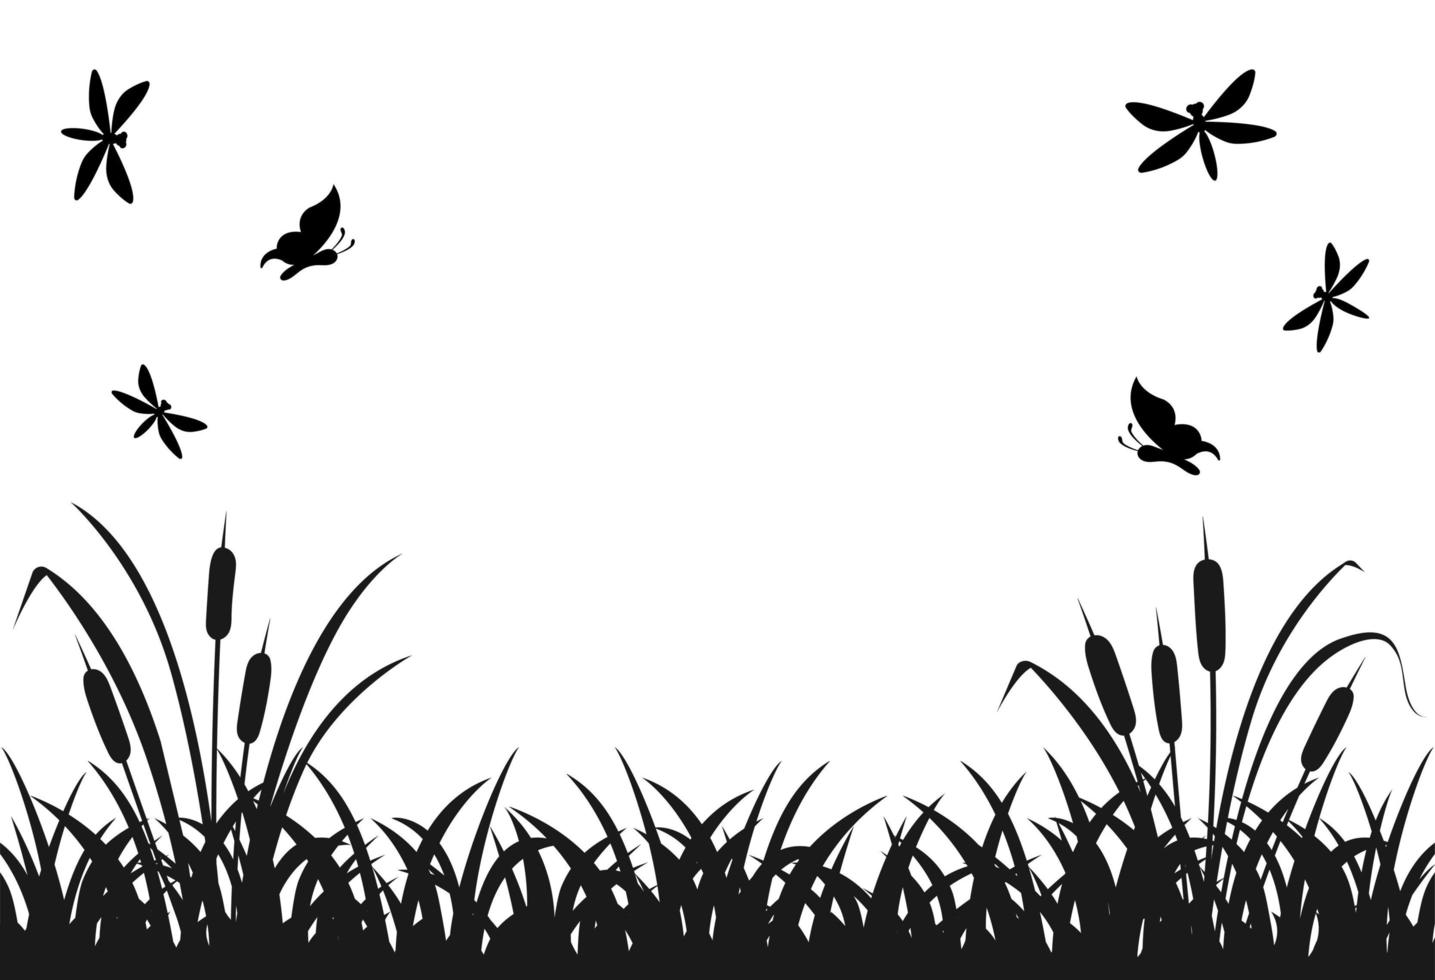 silueta negra de hierba de pantano con insectos voladores, caña de lago. vector